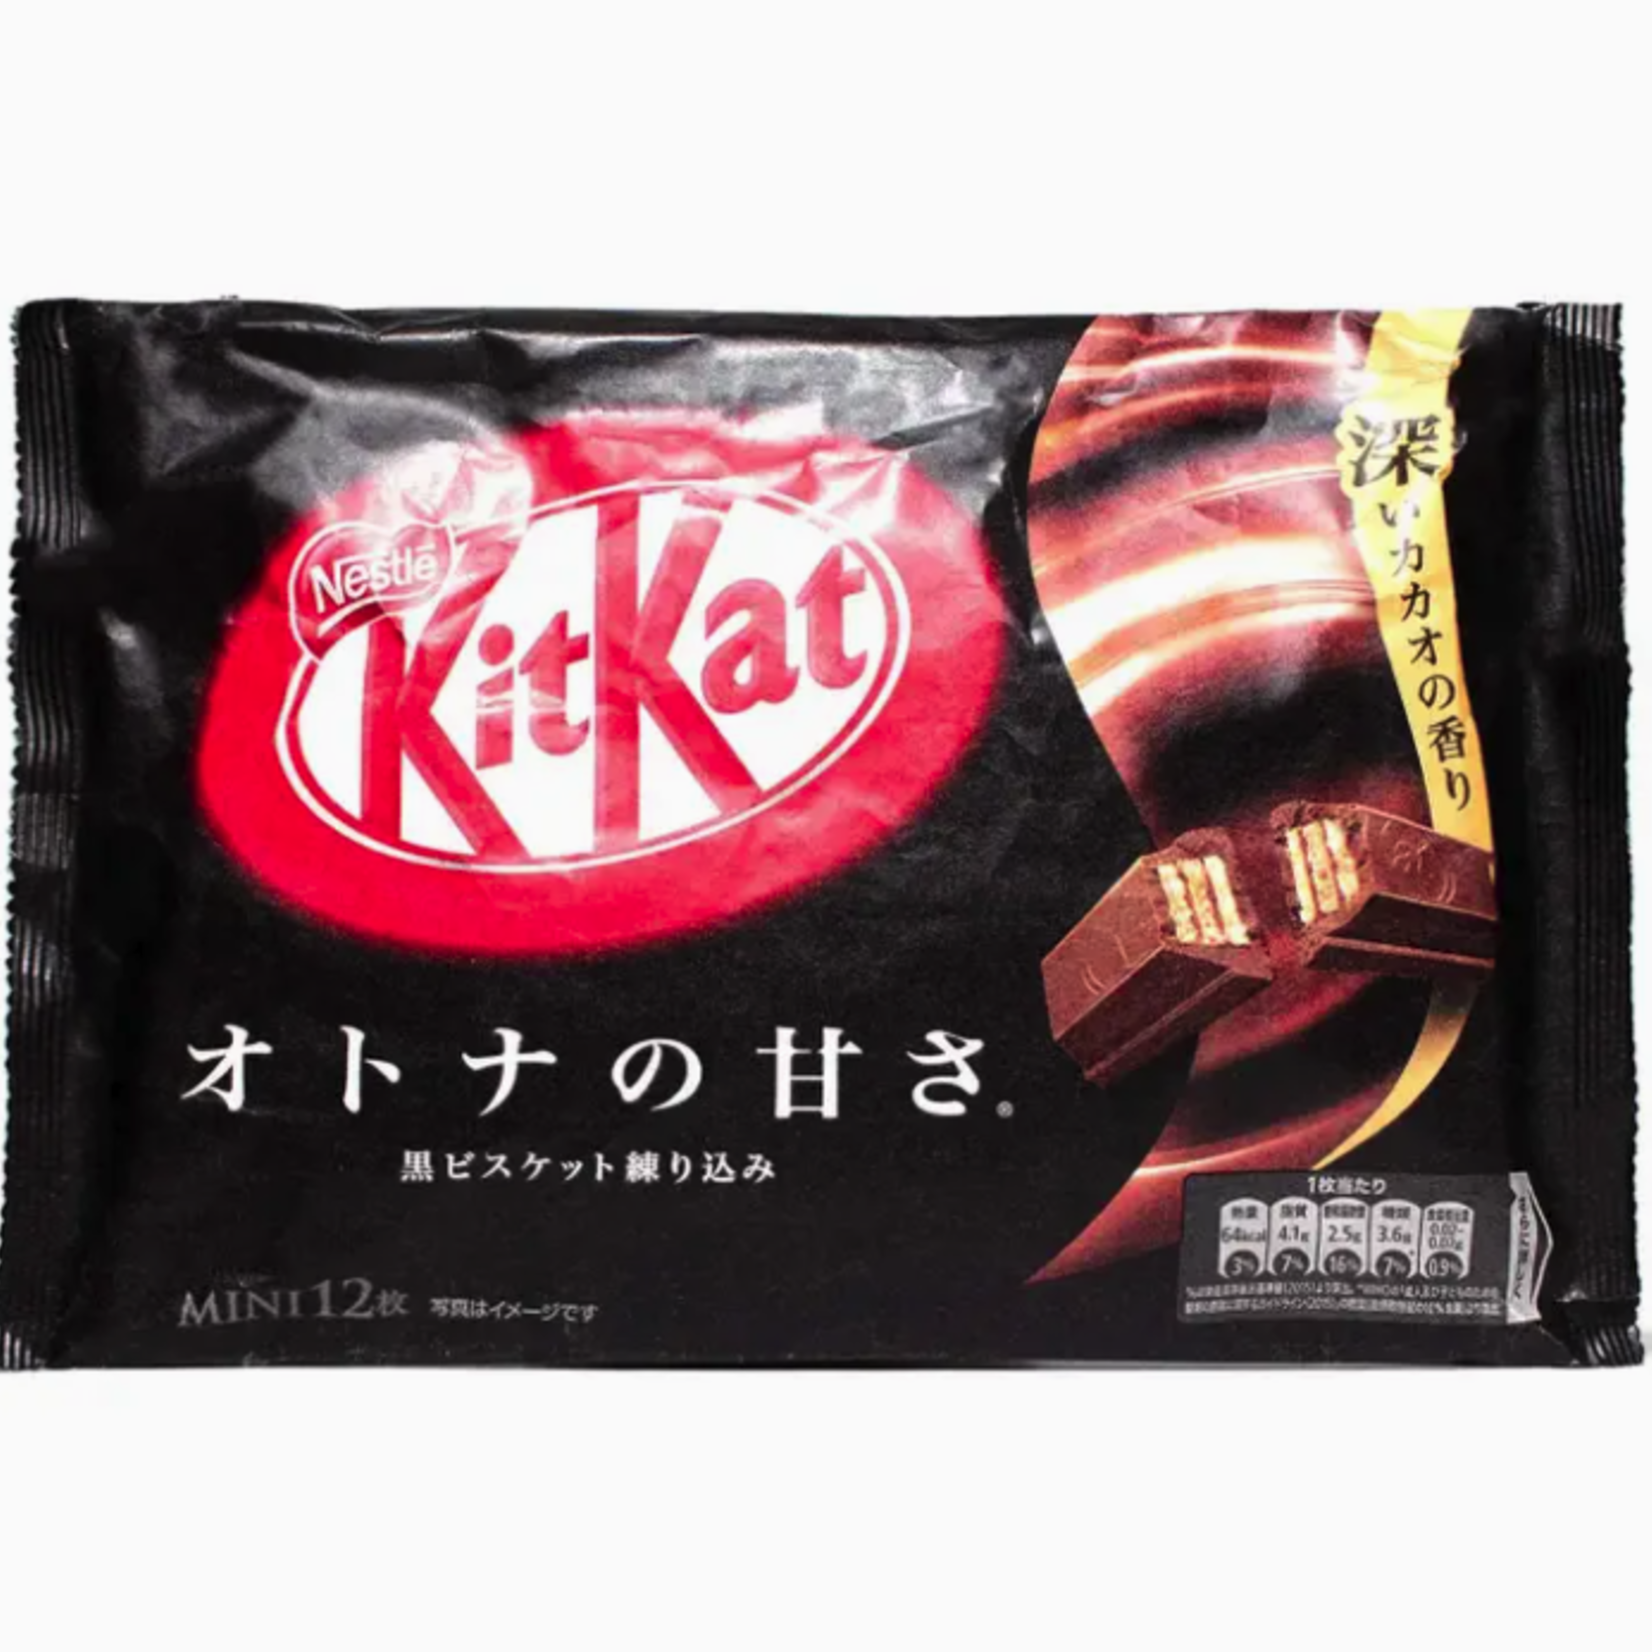 Japanese Kit kat Original